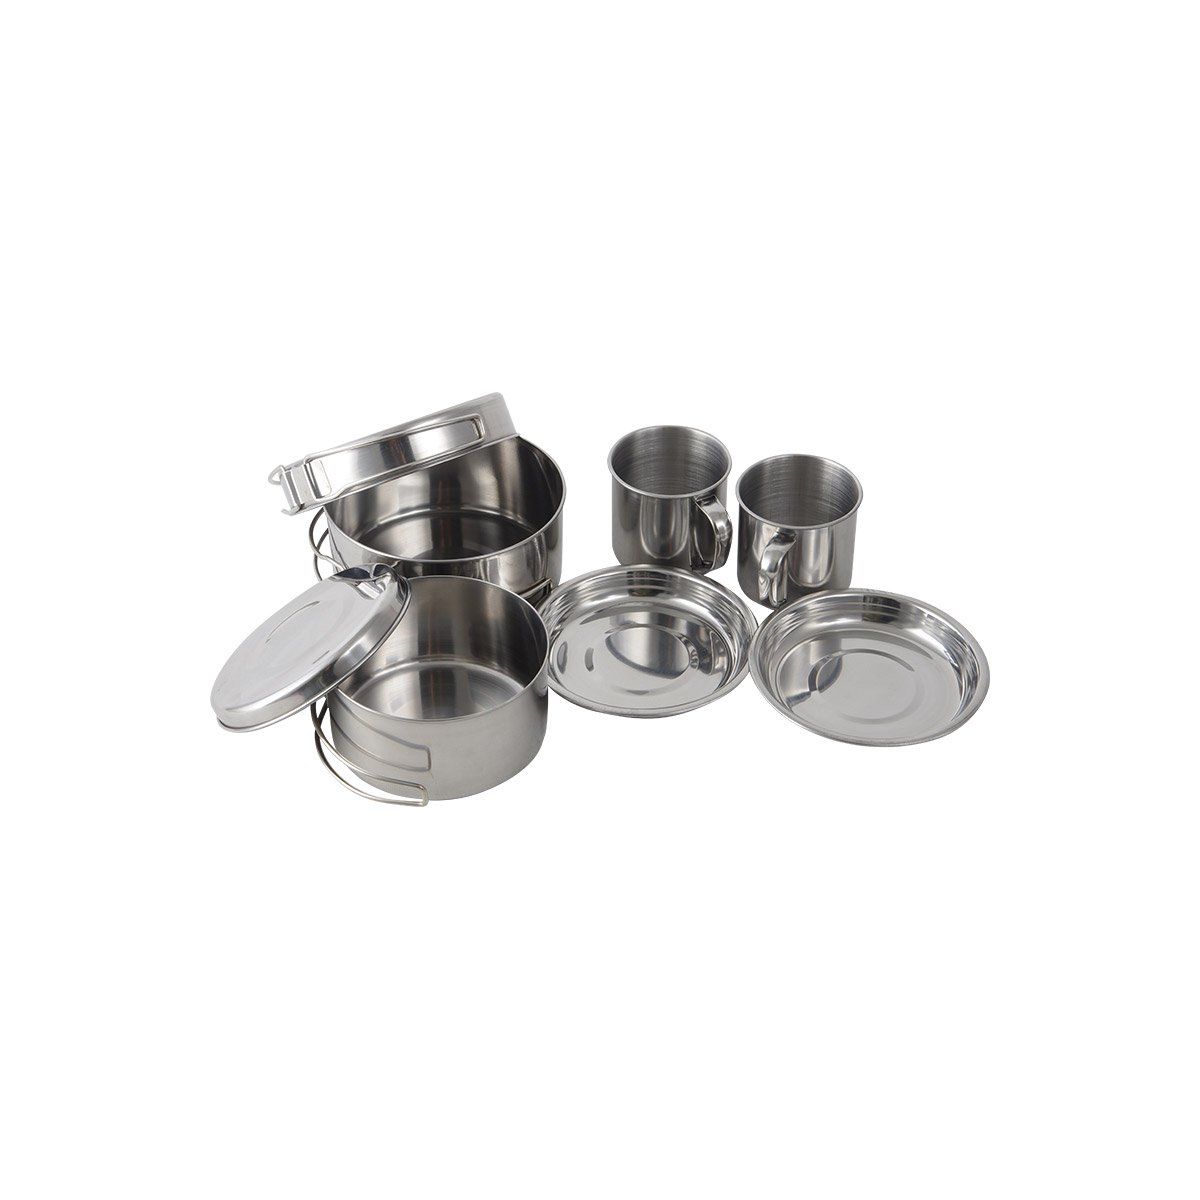 Набор посуды походный Camp-S11 из нержавеющей стали (8 предметов) (106940)Купить